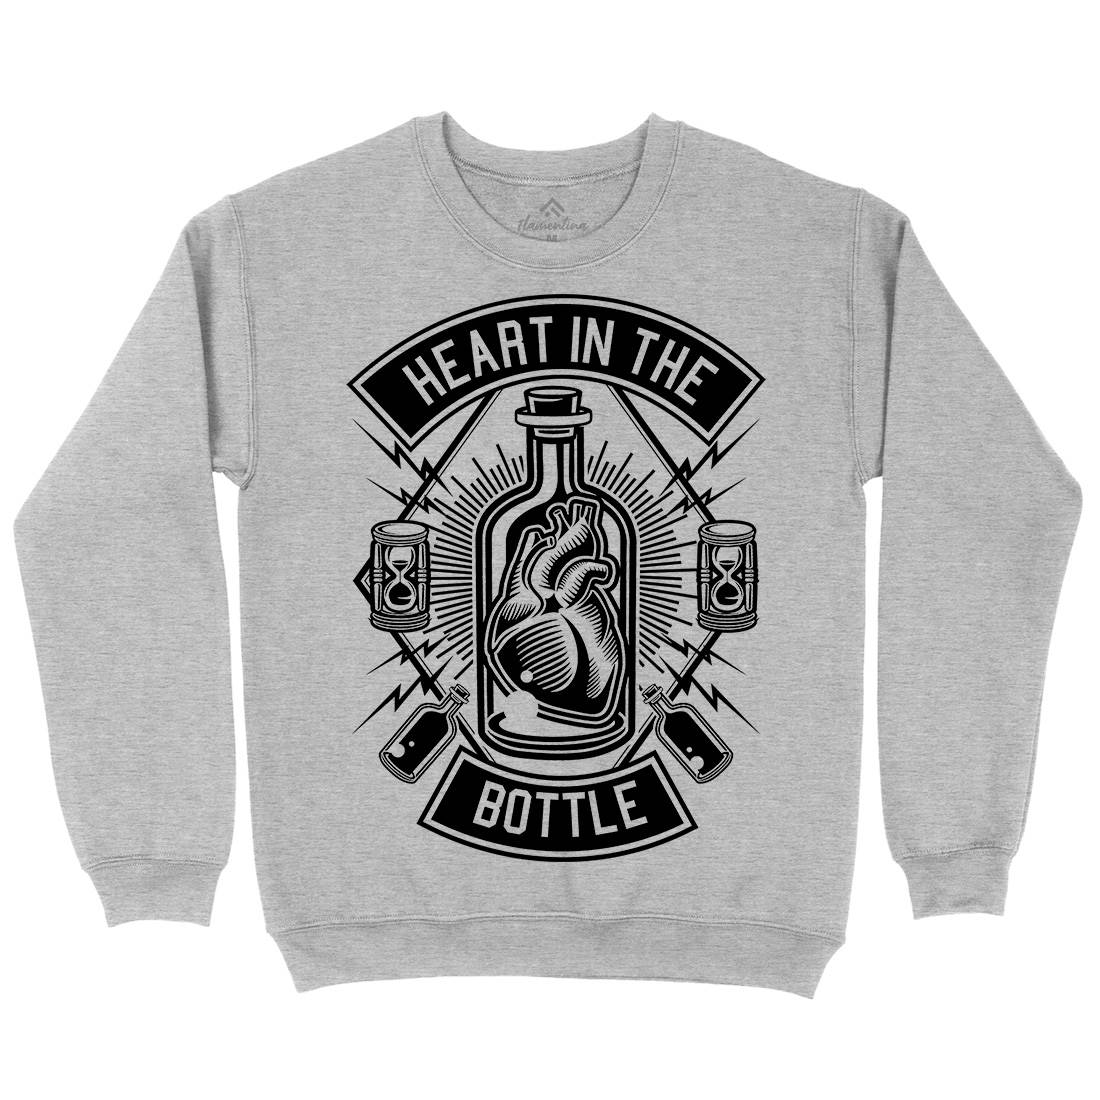 Heart In The Bottle Kids Crew Neck Sweatshirt Navy B552